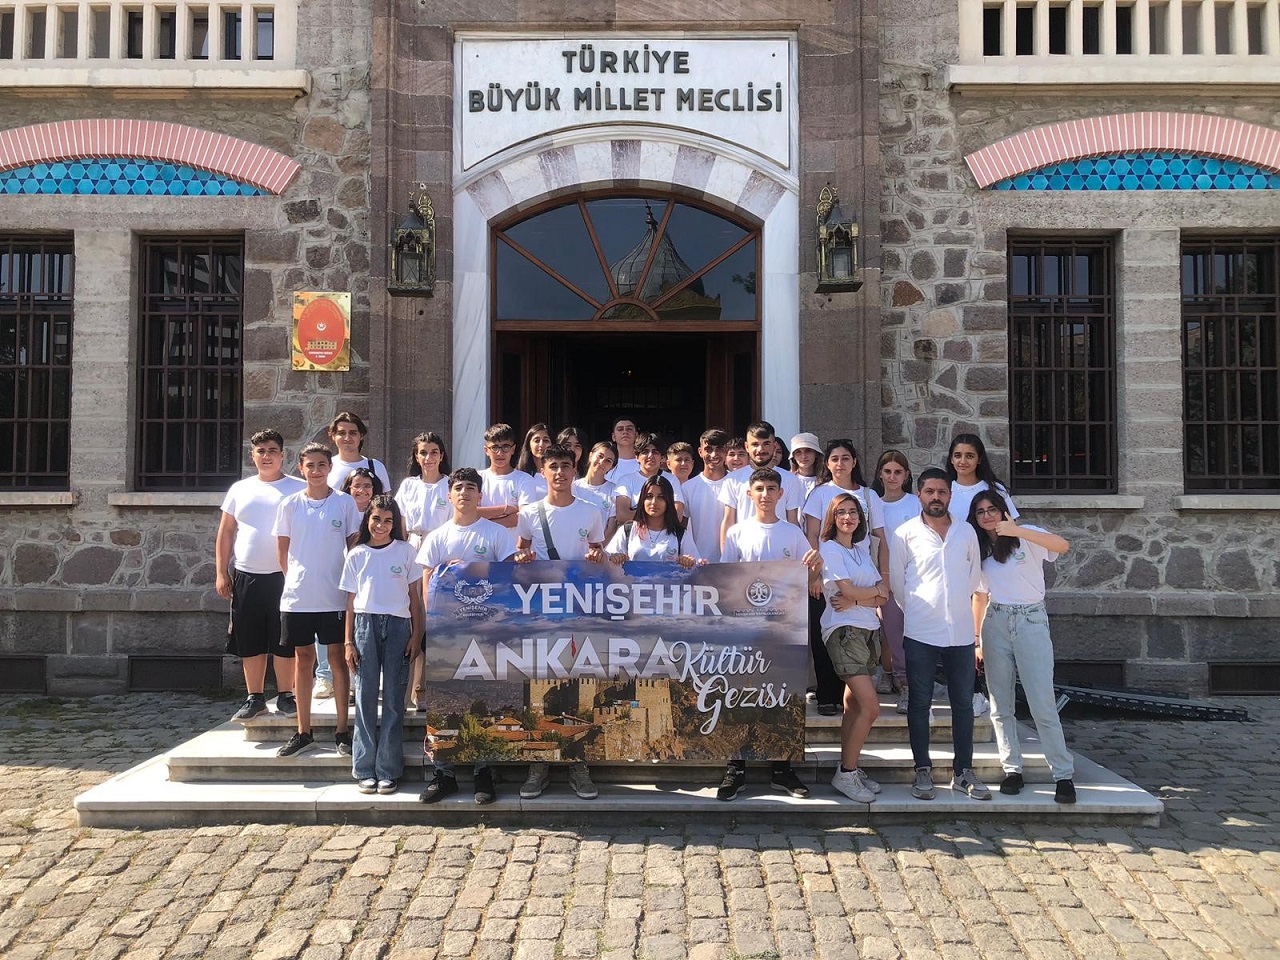 Yenişehir Belediyesi’nden Ankara'ya kültür gezisi